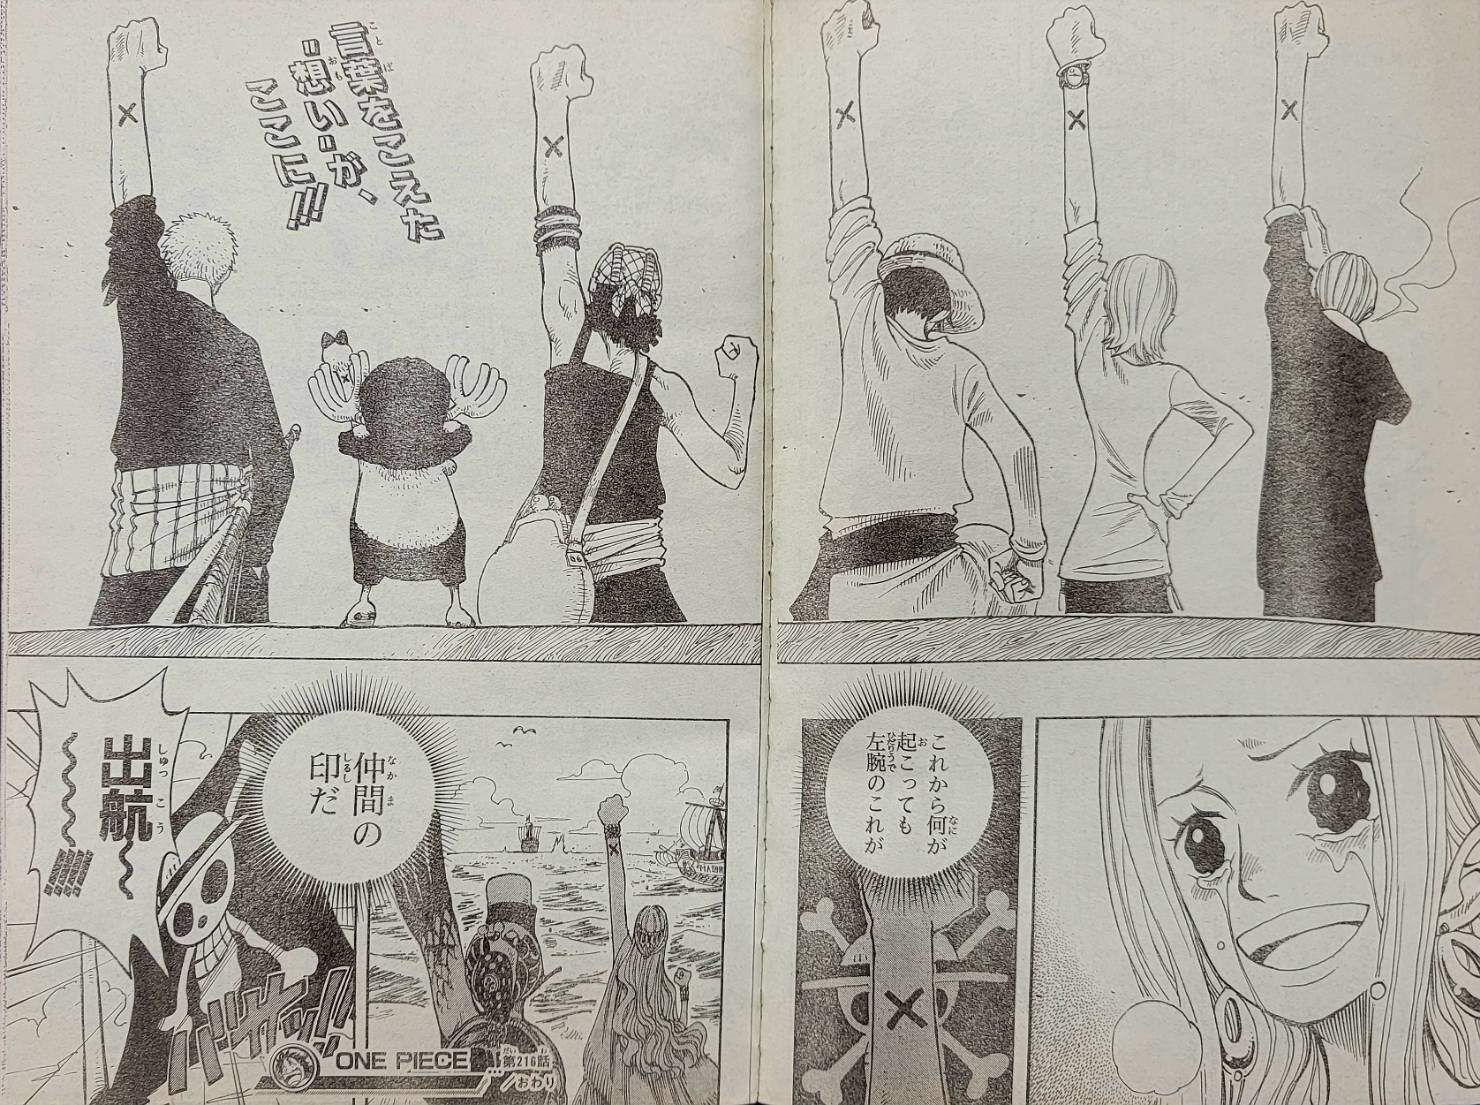 Os pilares da Shonen Jump (1990-2002), como era a revista?